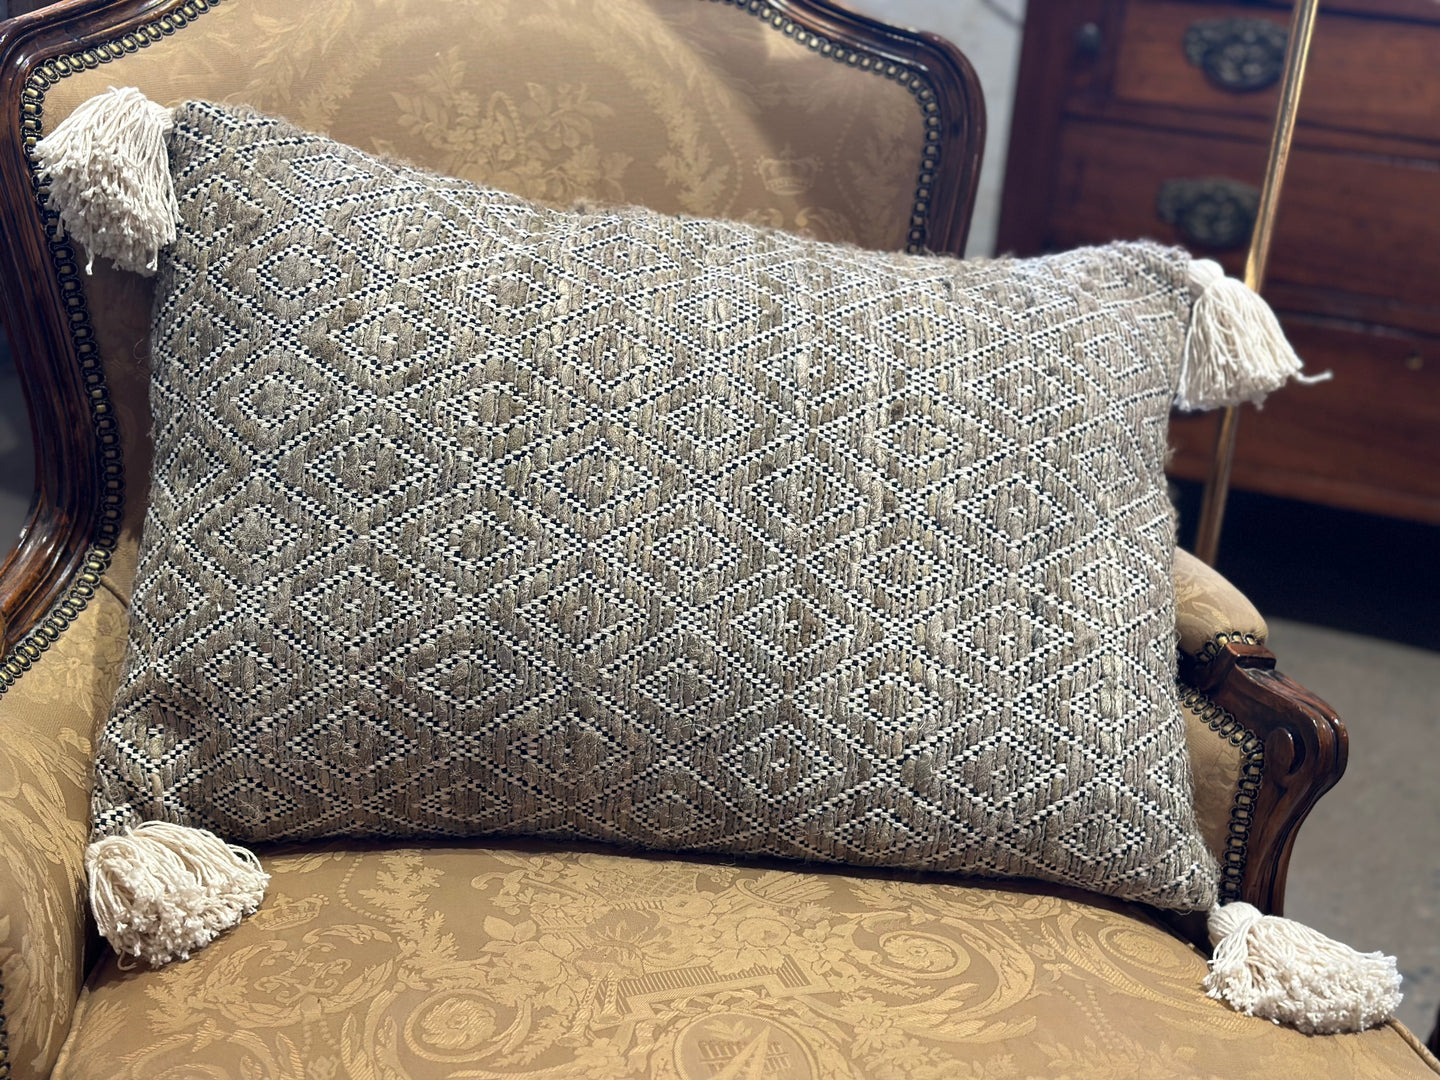 Woven Cotton Lumbar Pillow w/ Tassels